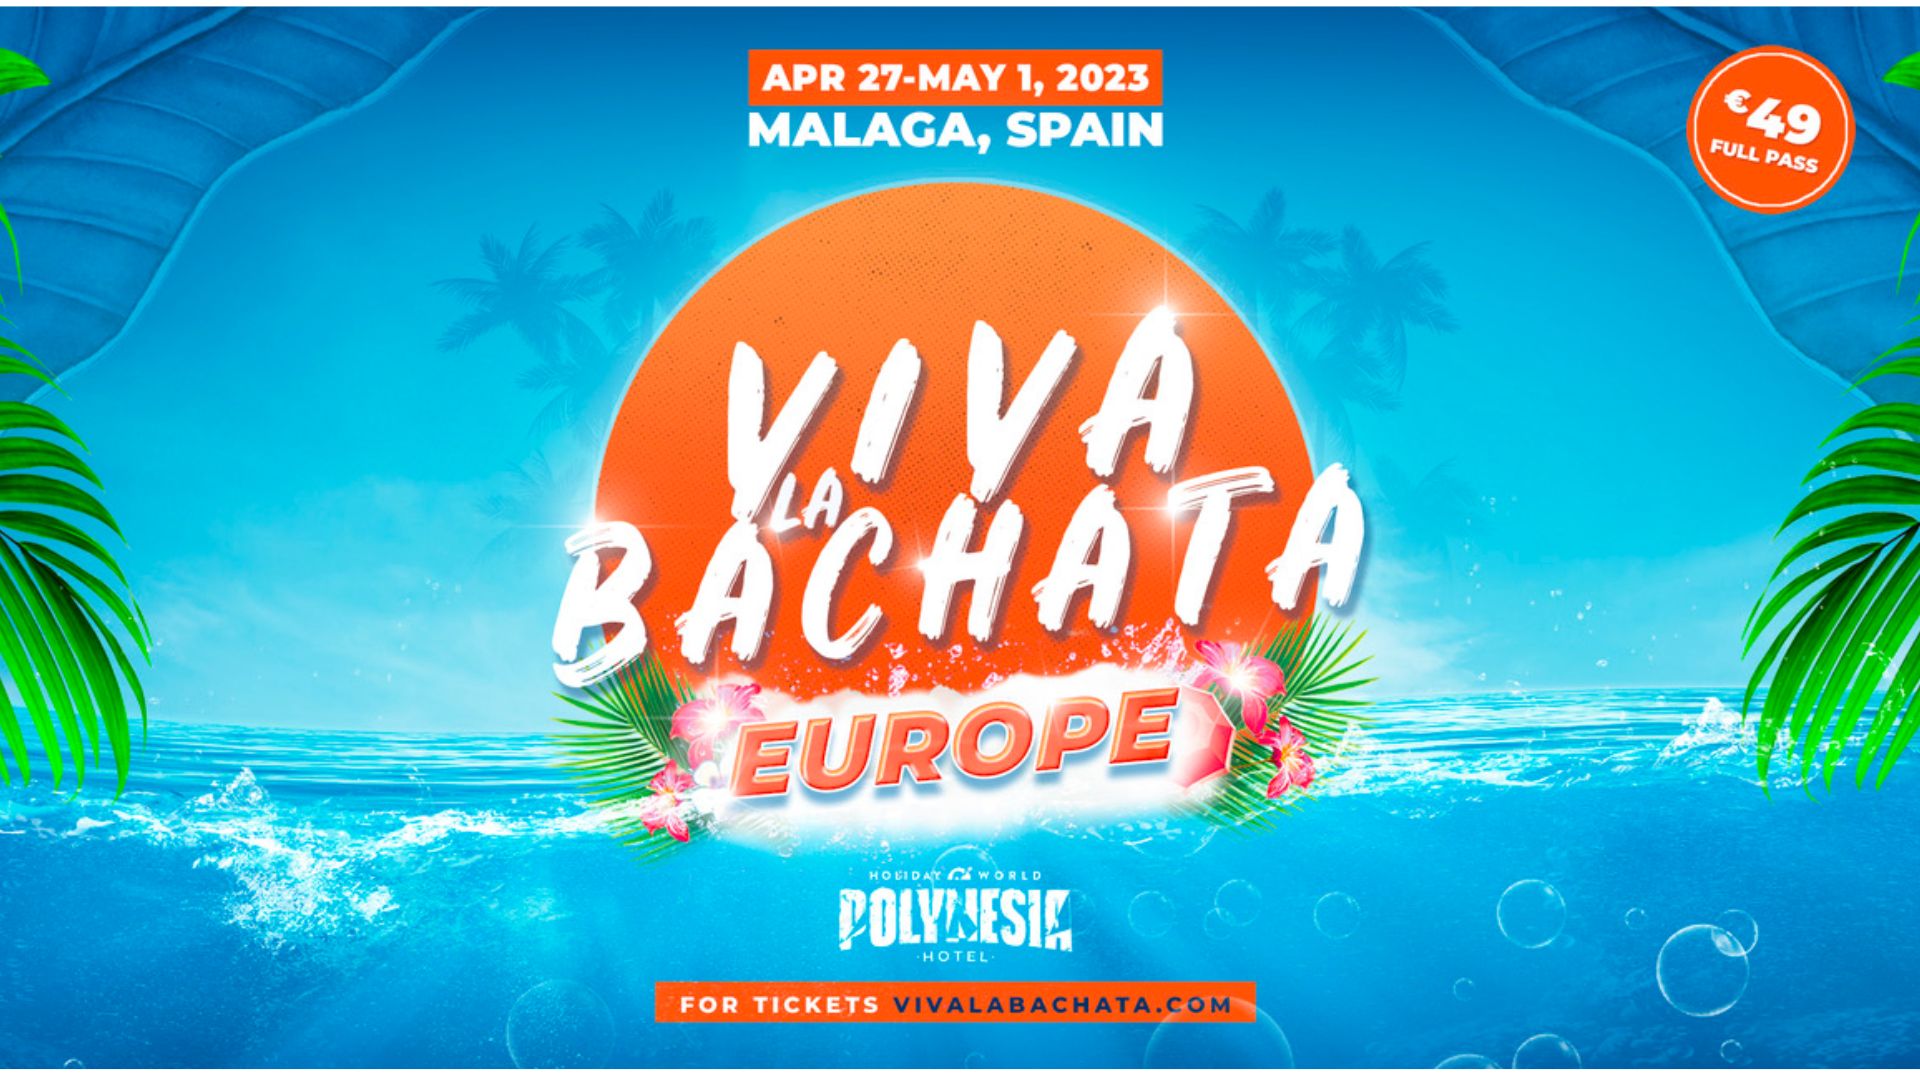 Viva La Bachata Europe 2023 bachataloves.me the best bachata